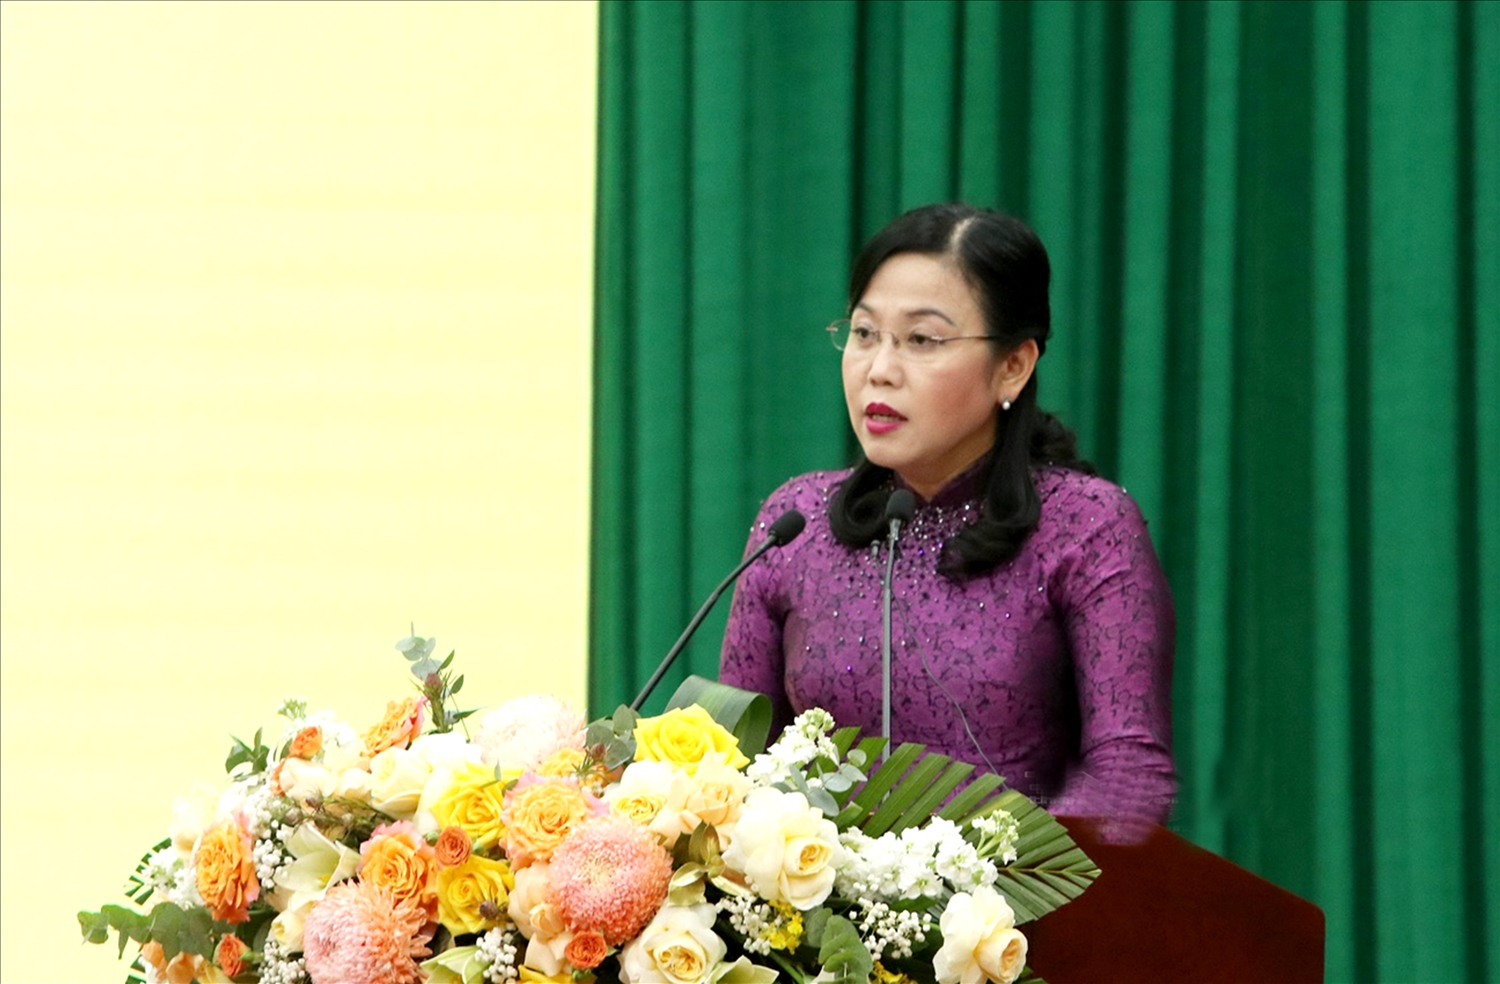 Bà Nguyễn Thanh Hải, Bí thư Tỉnh ủy tỉnh Thái Nguyên phát biểu tại Hội nghị